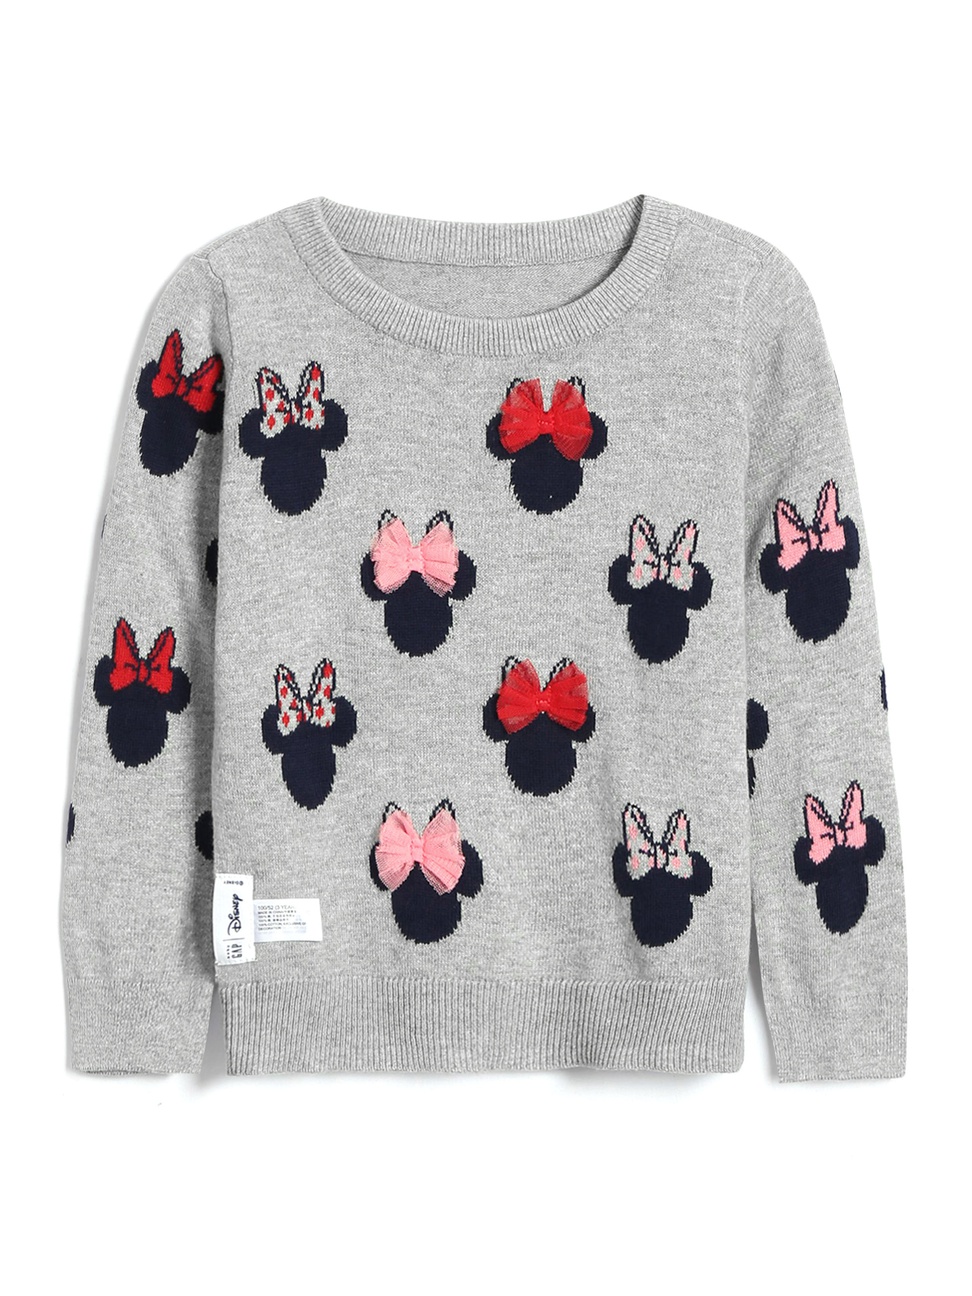 女幼童裝|Gap x Disney迪士尼聯名 米妮長袖針織衫-米妮老鼠圖案